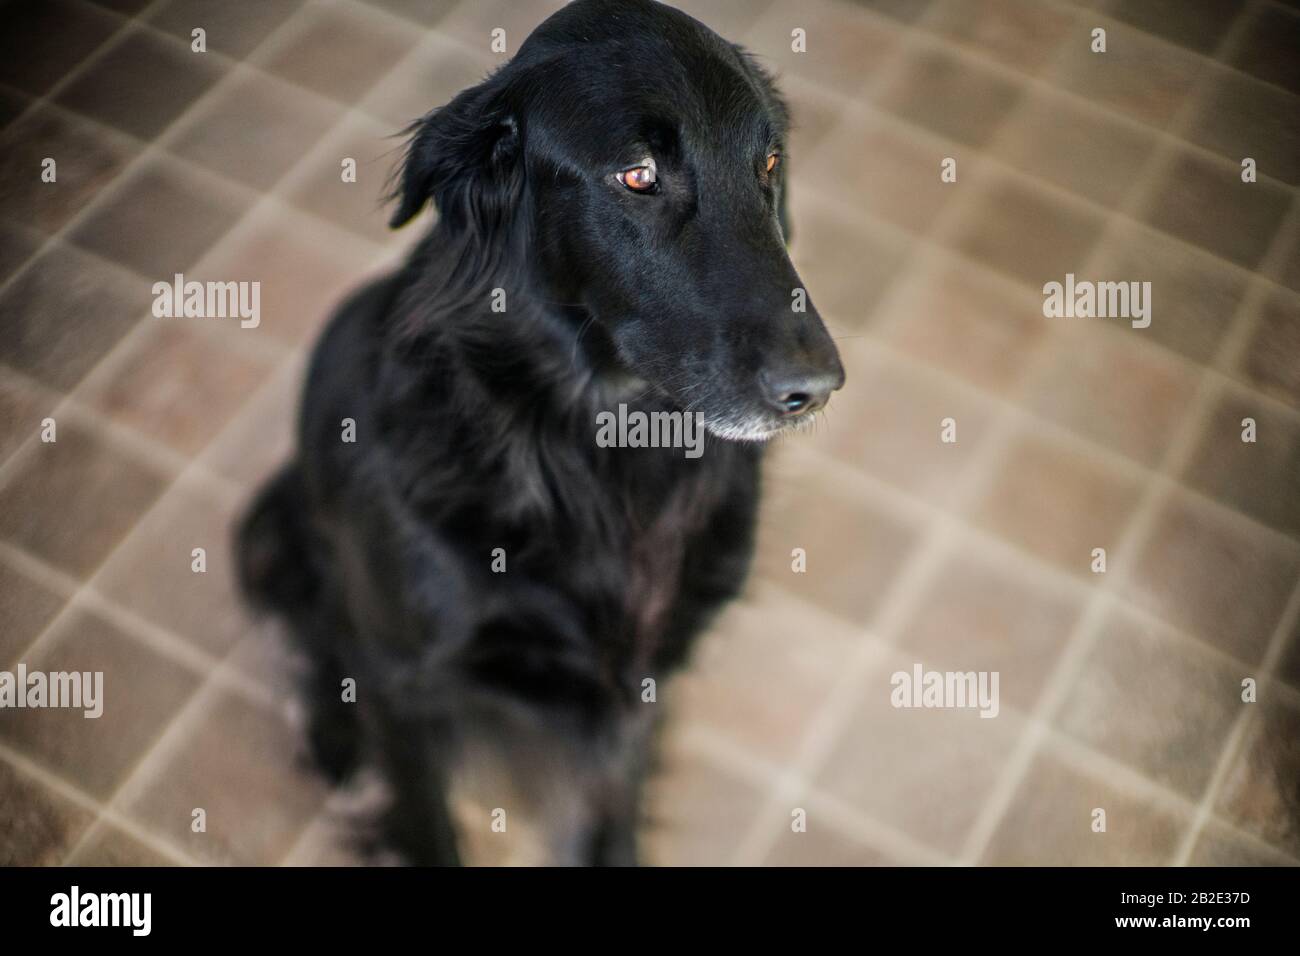 Perro negro sentado en el piso de la cocina Foto de stock